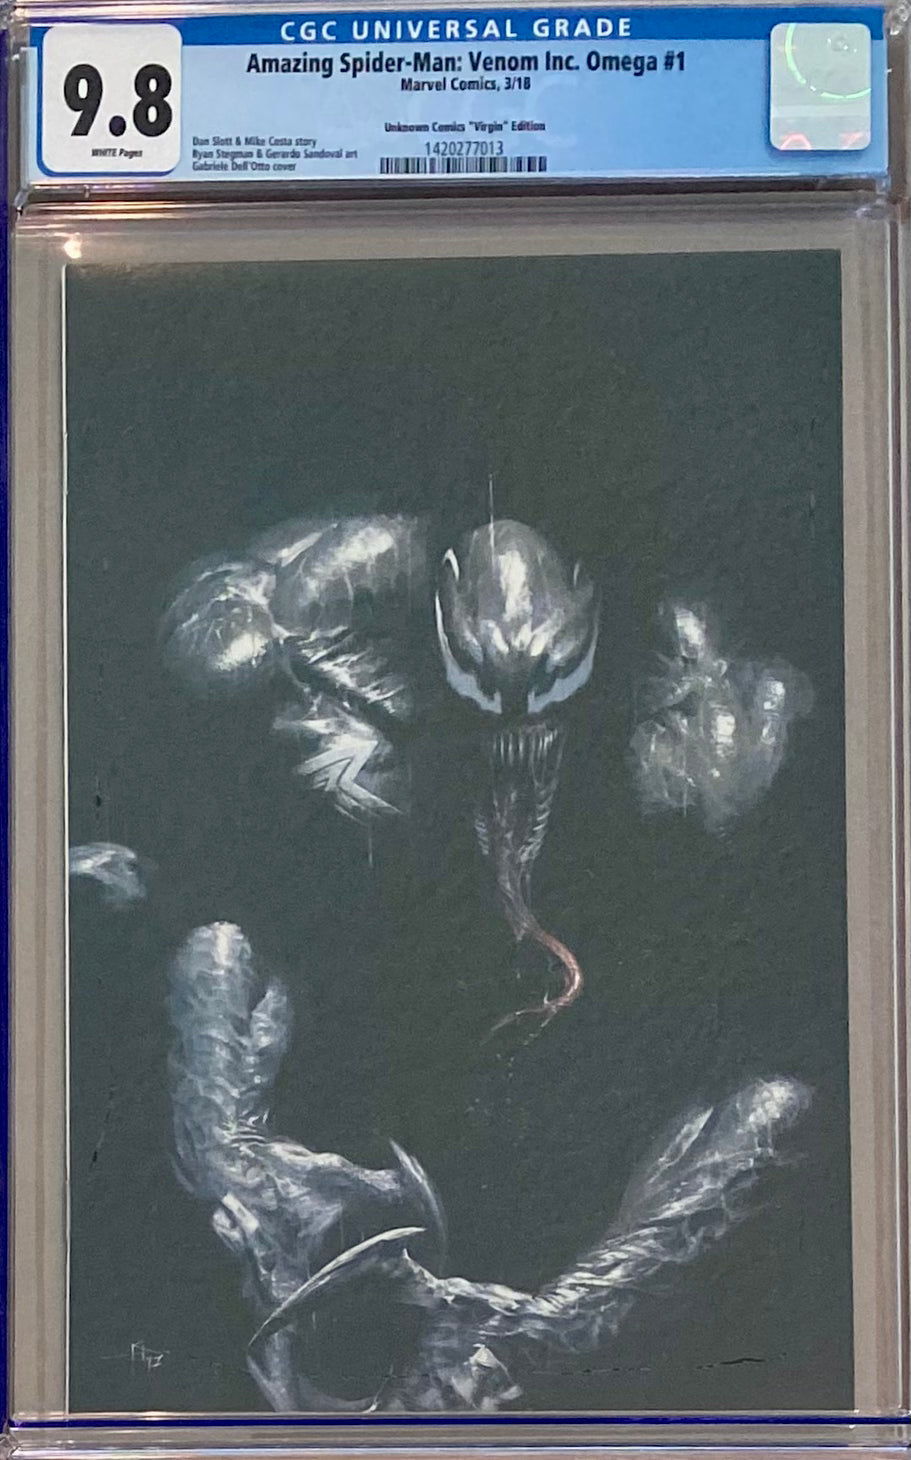 Amazing Spider-Man: Venom Inc. Omega #1 Dell'Otto Virgin Convention Exclusive CGC 9.8